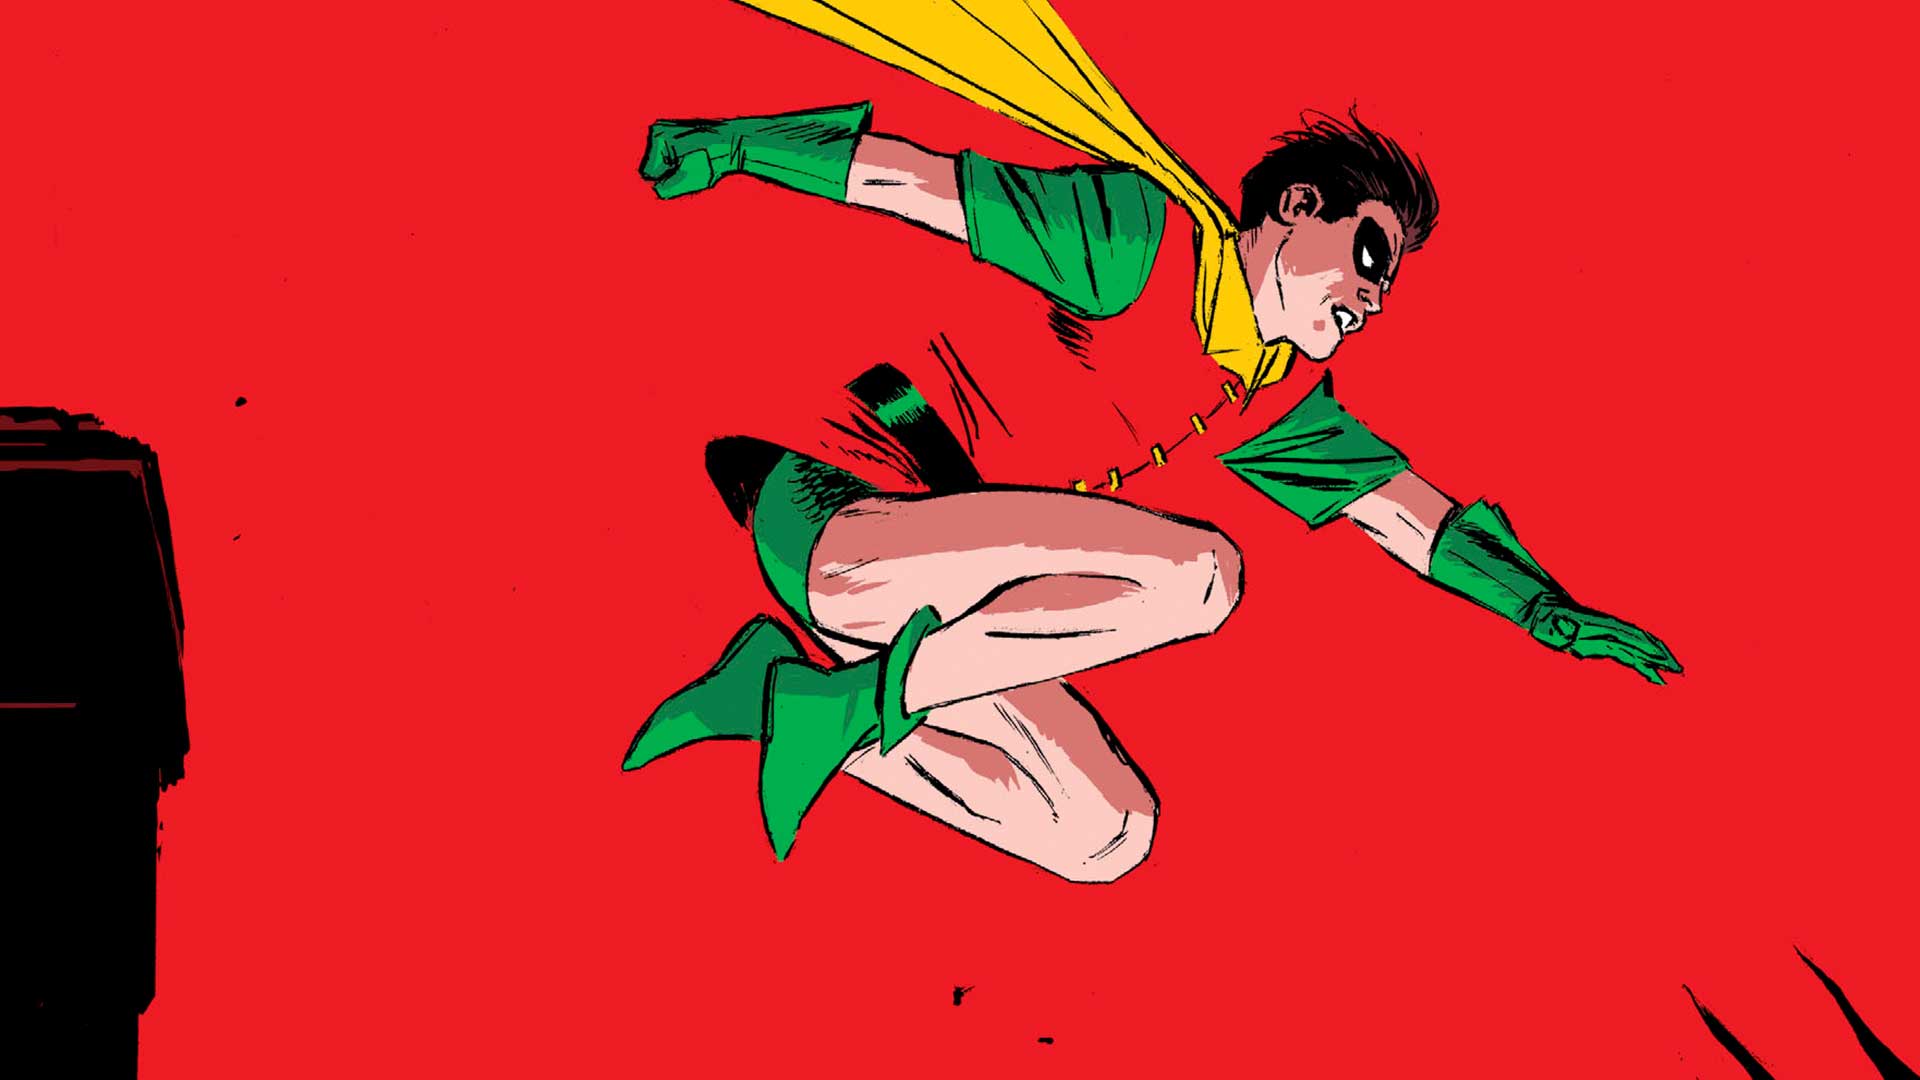 Robin, The Orignal Boy Wonder